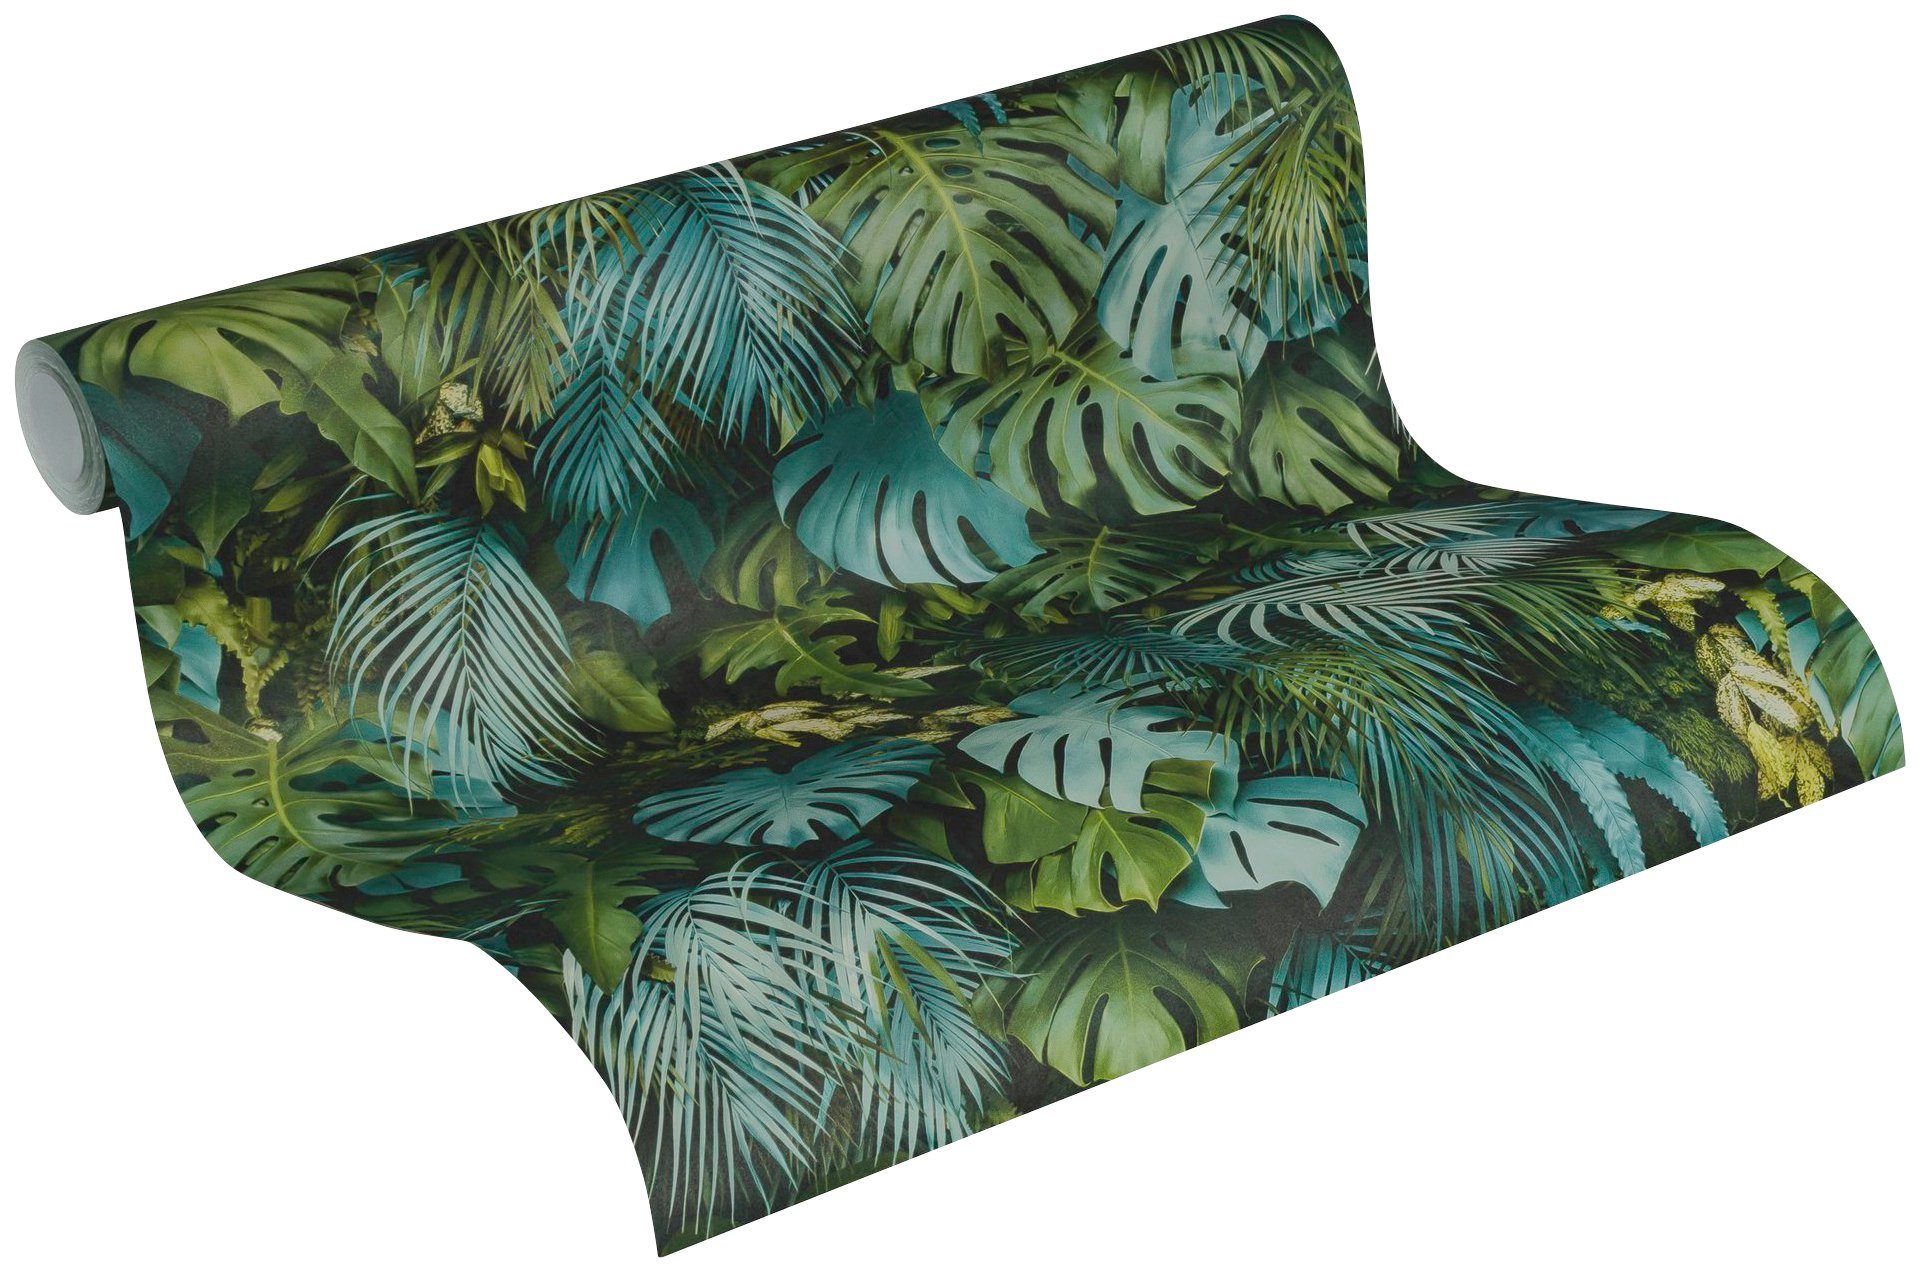 Tapete Palmentapete Dschungel mit A.S. Vliestapete Palmenprint floral, bunt/blau in Création Dschungel Optik, Greenery